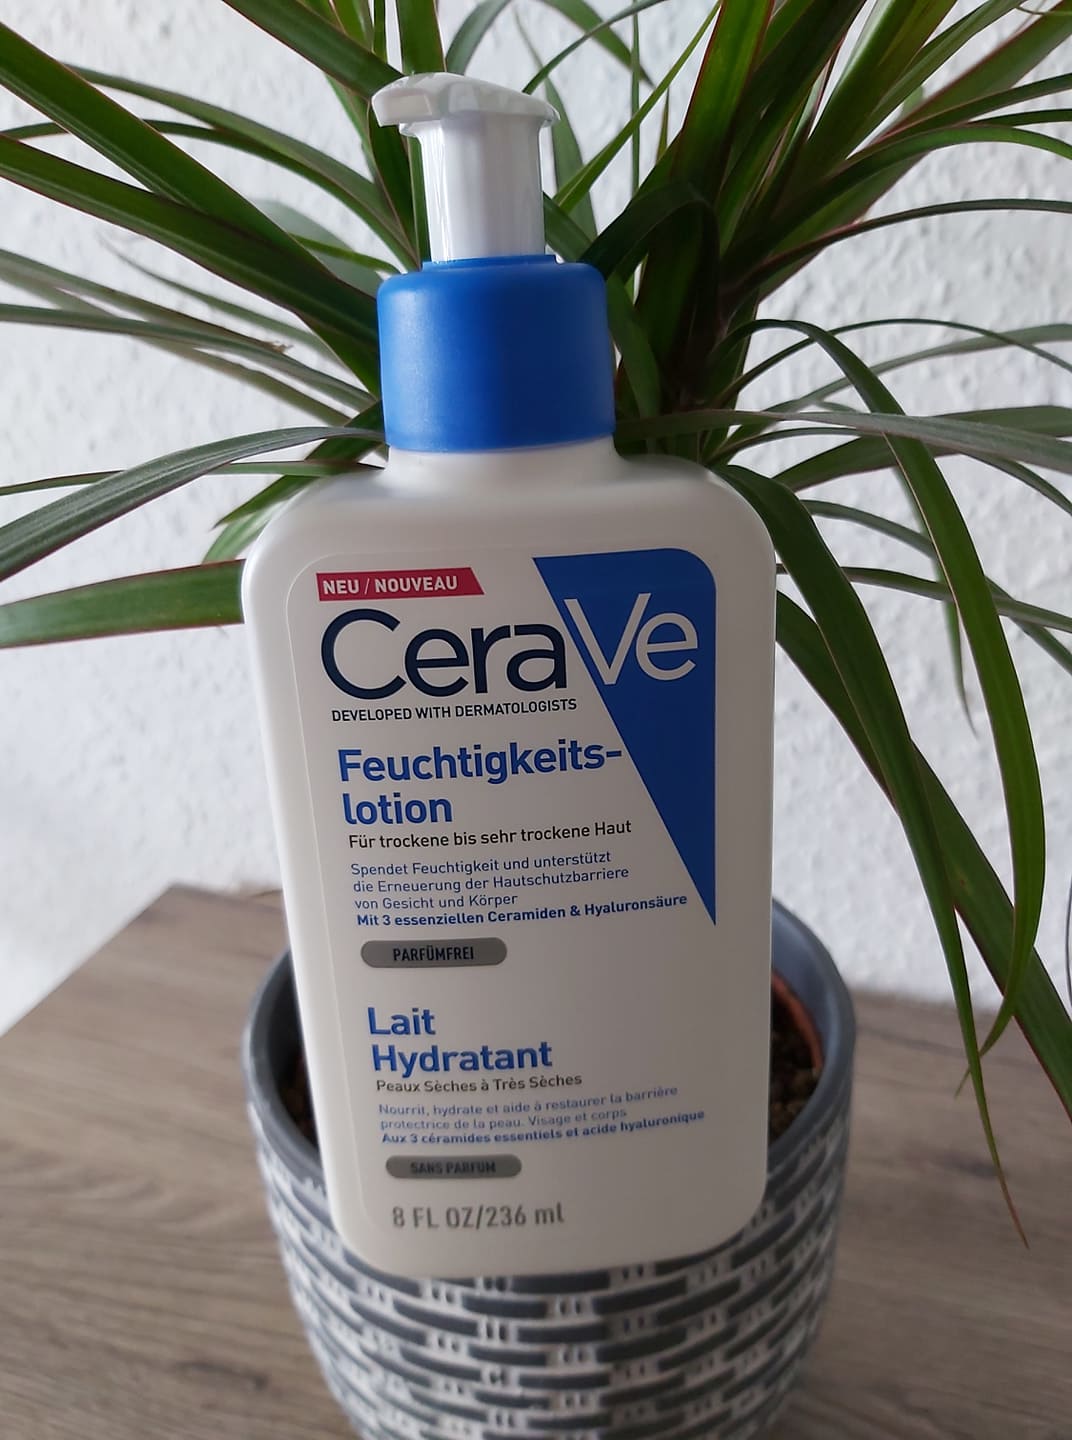 Die CeraVe Feuchtigkeitslotion für trockene bis sehr trockene Haut